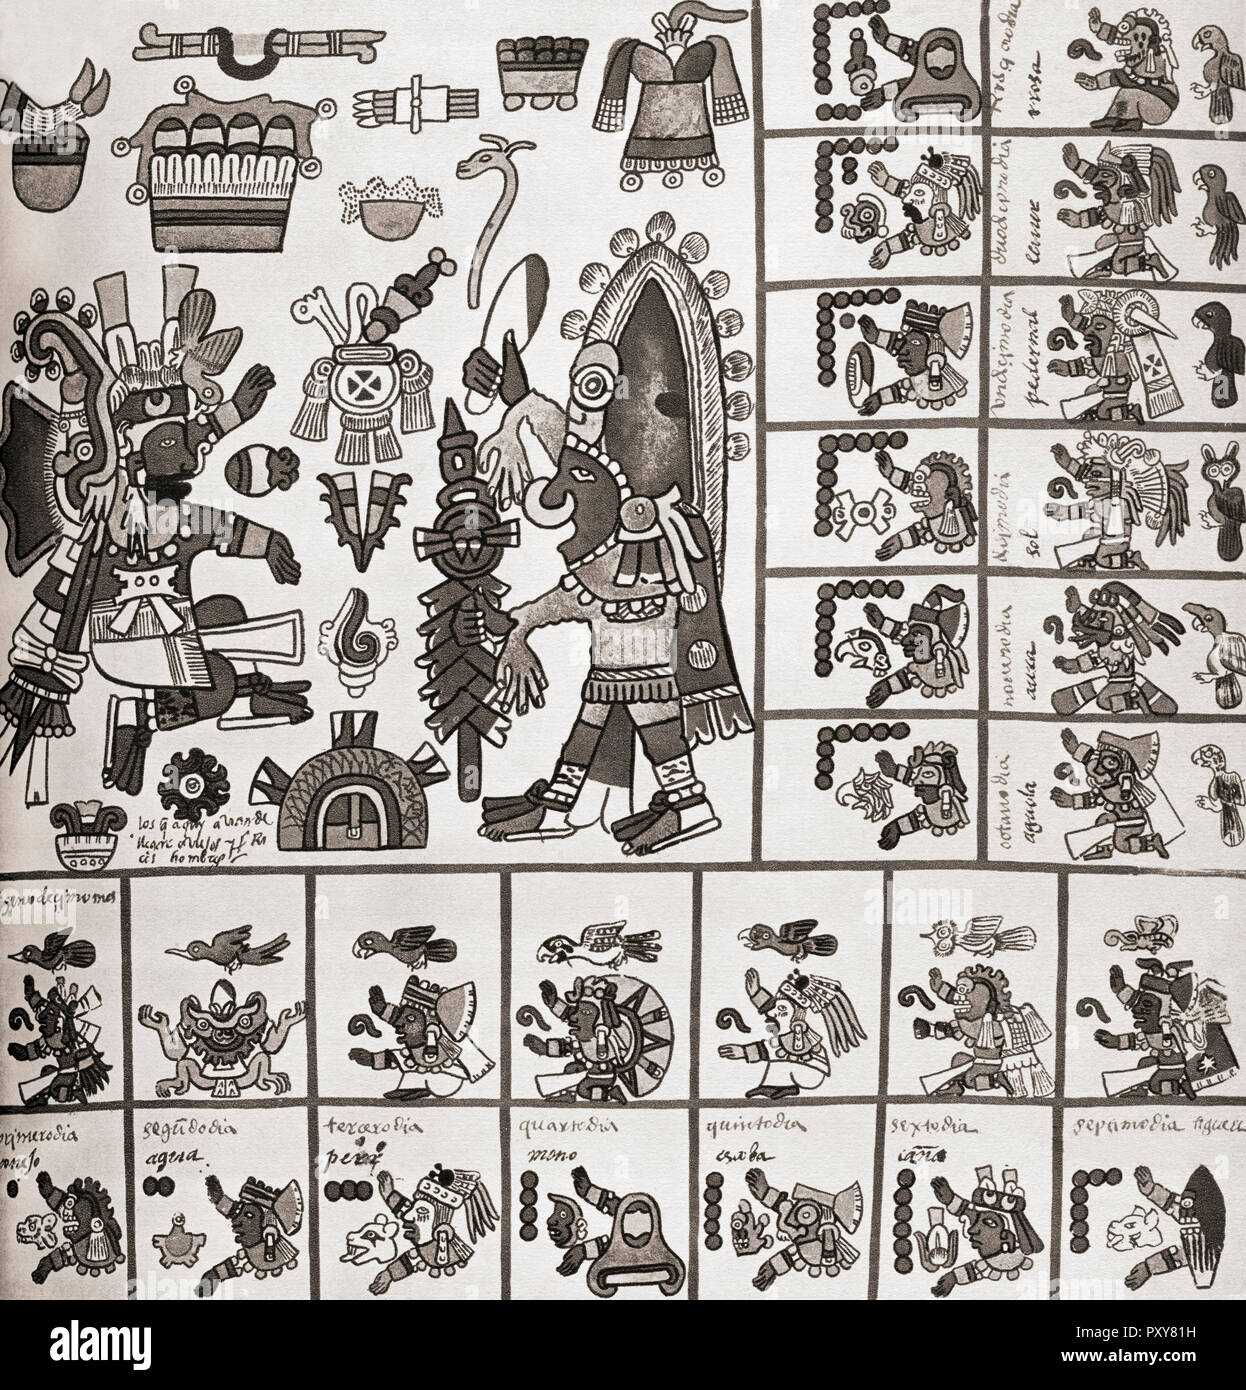 Détail d'un télécopieur copie du Codex Borbonicus. Le Codex Borbonicus est un codex aztèque écrit par les prêtres aztèques peu avant ou après la conquête espagnole du Mexique au 16ème siècle. Banque D'Images